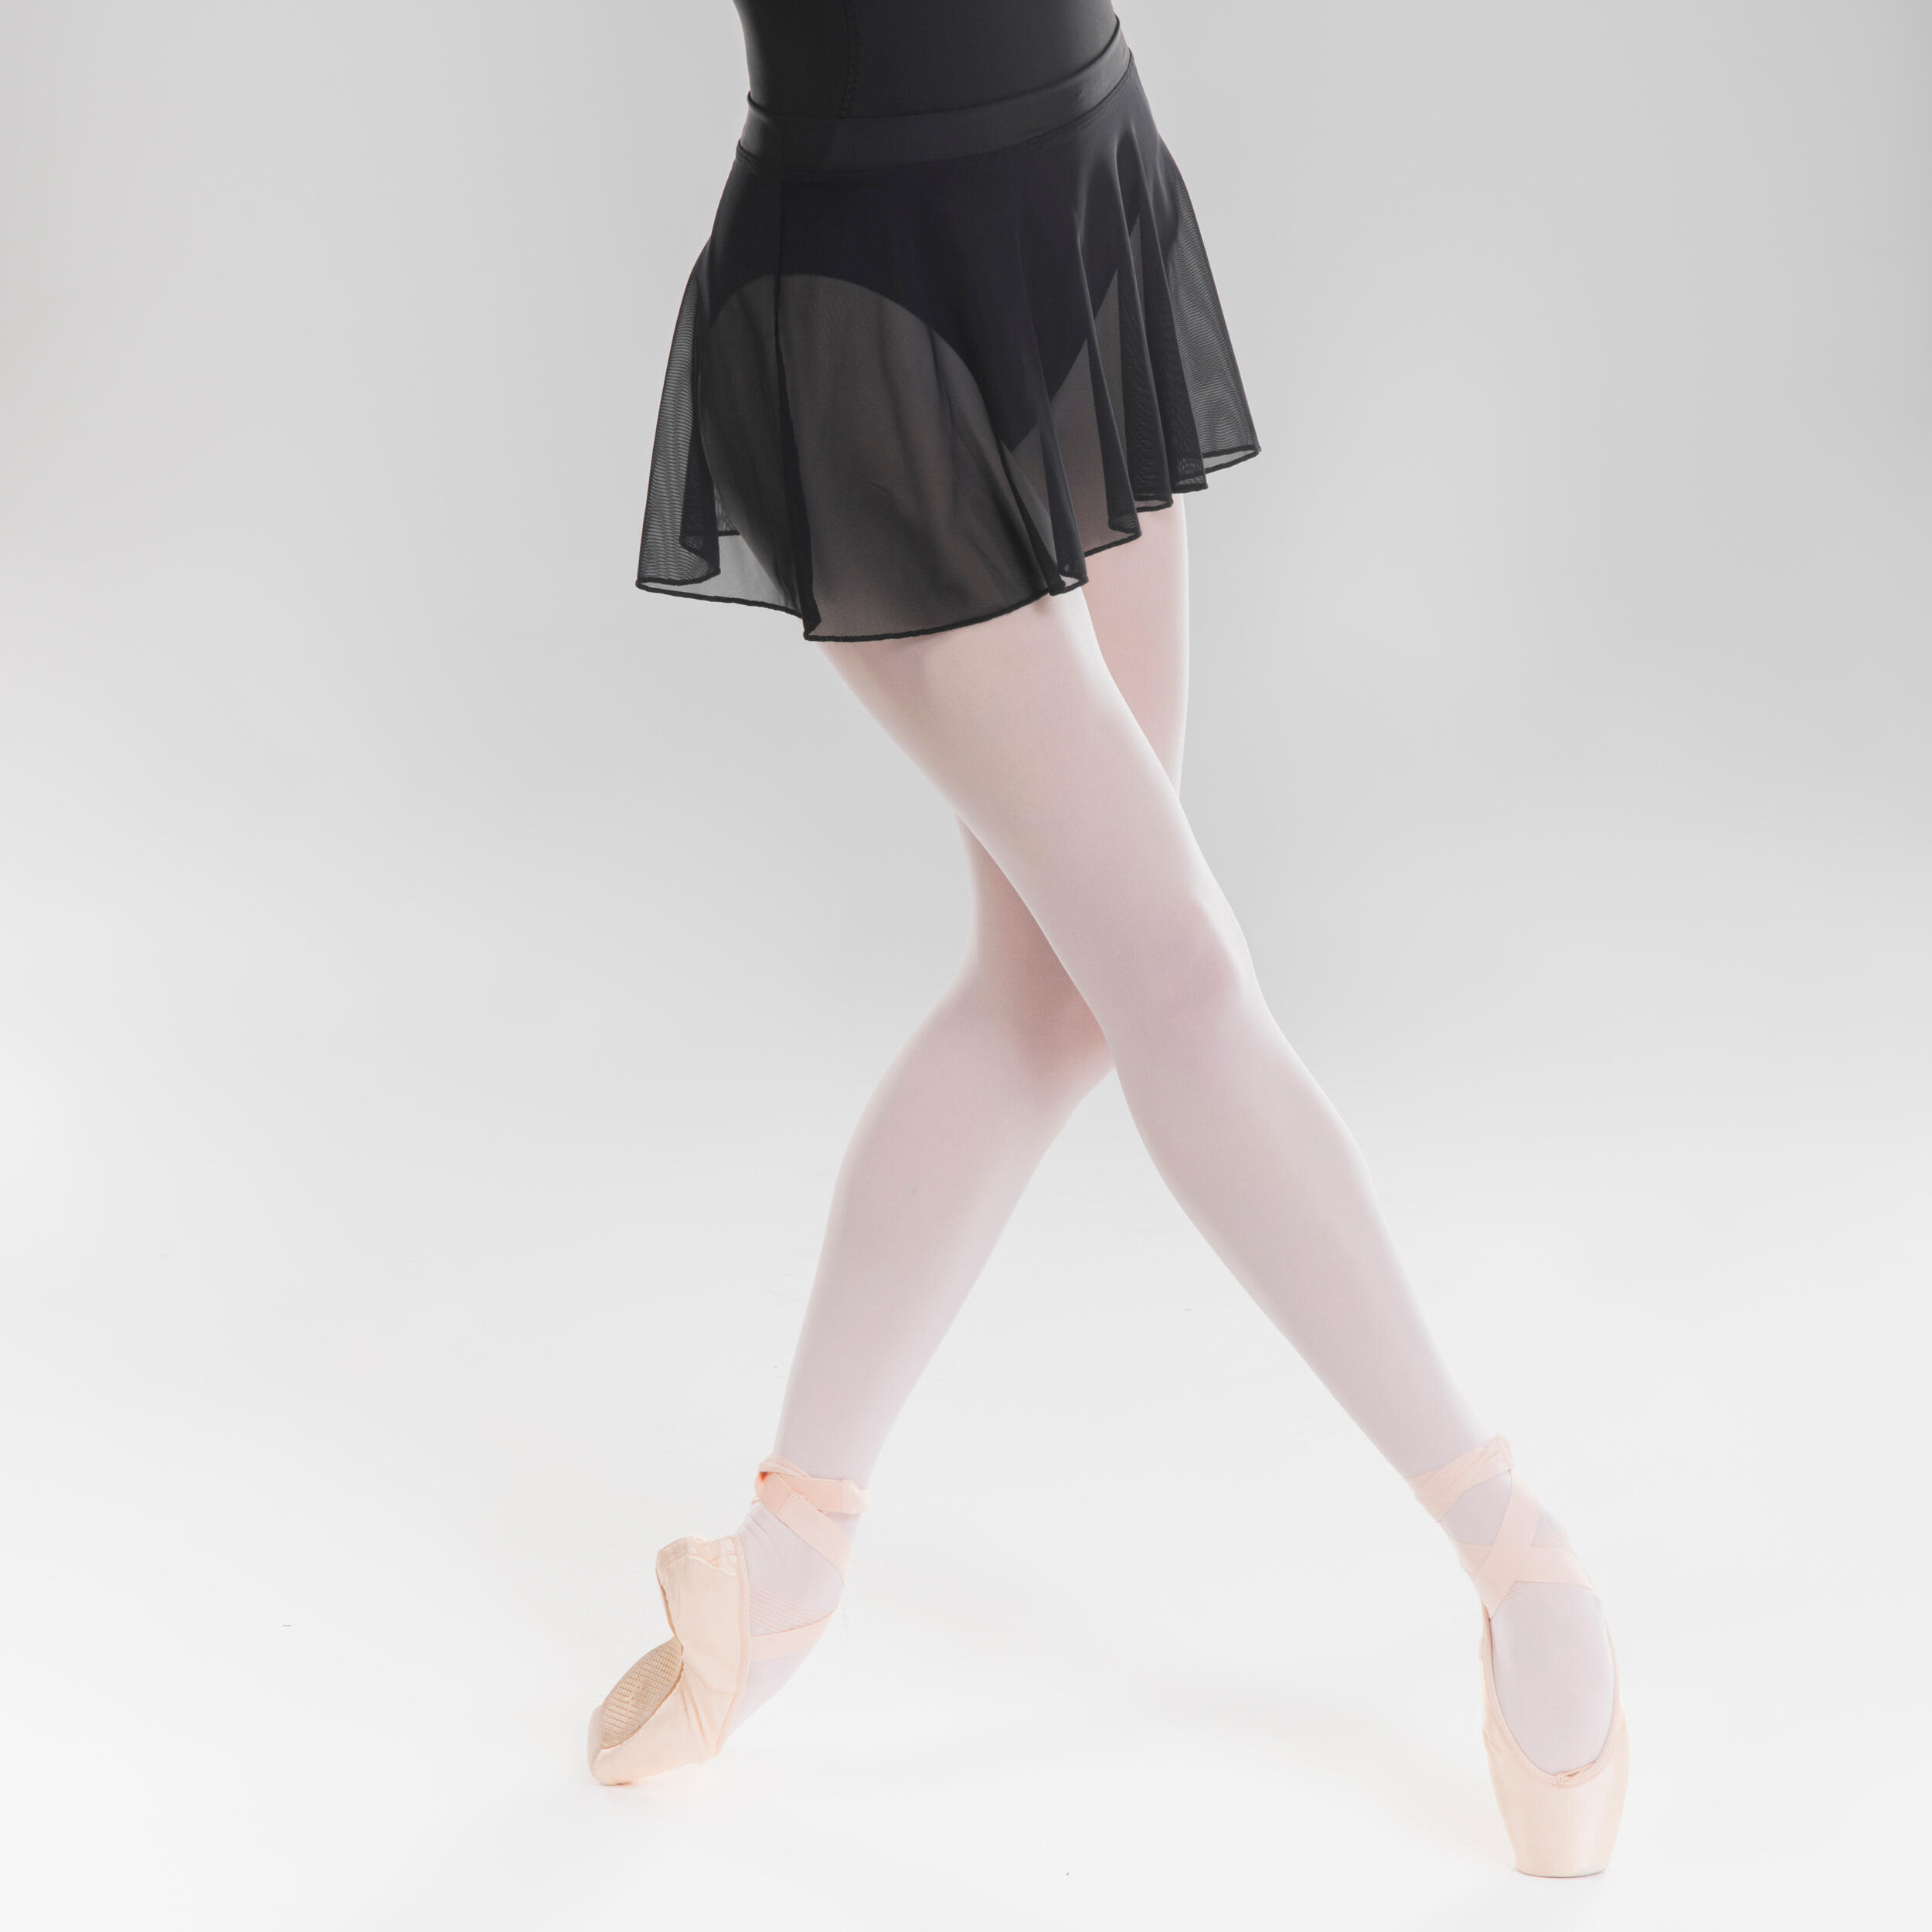 Tulle Ballerina Skirt, 49% OFF | coletivonerd.com.br